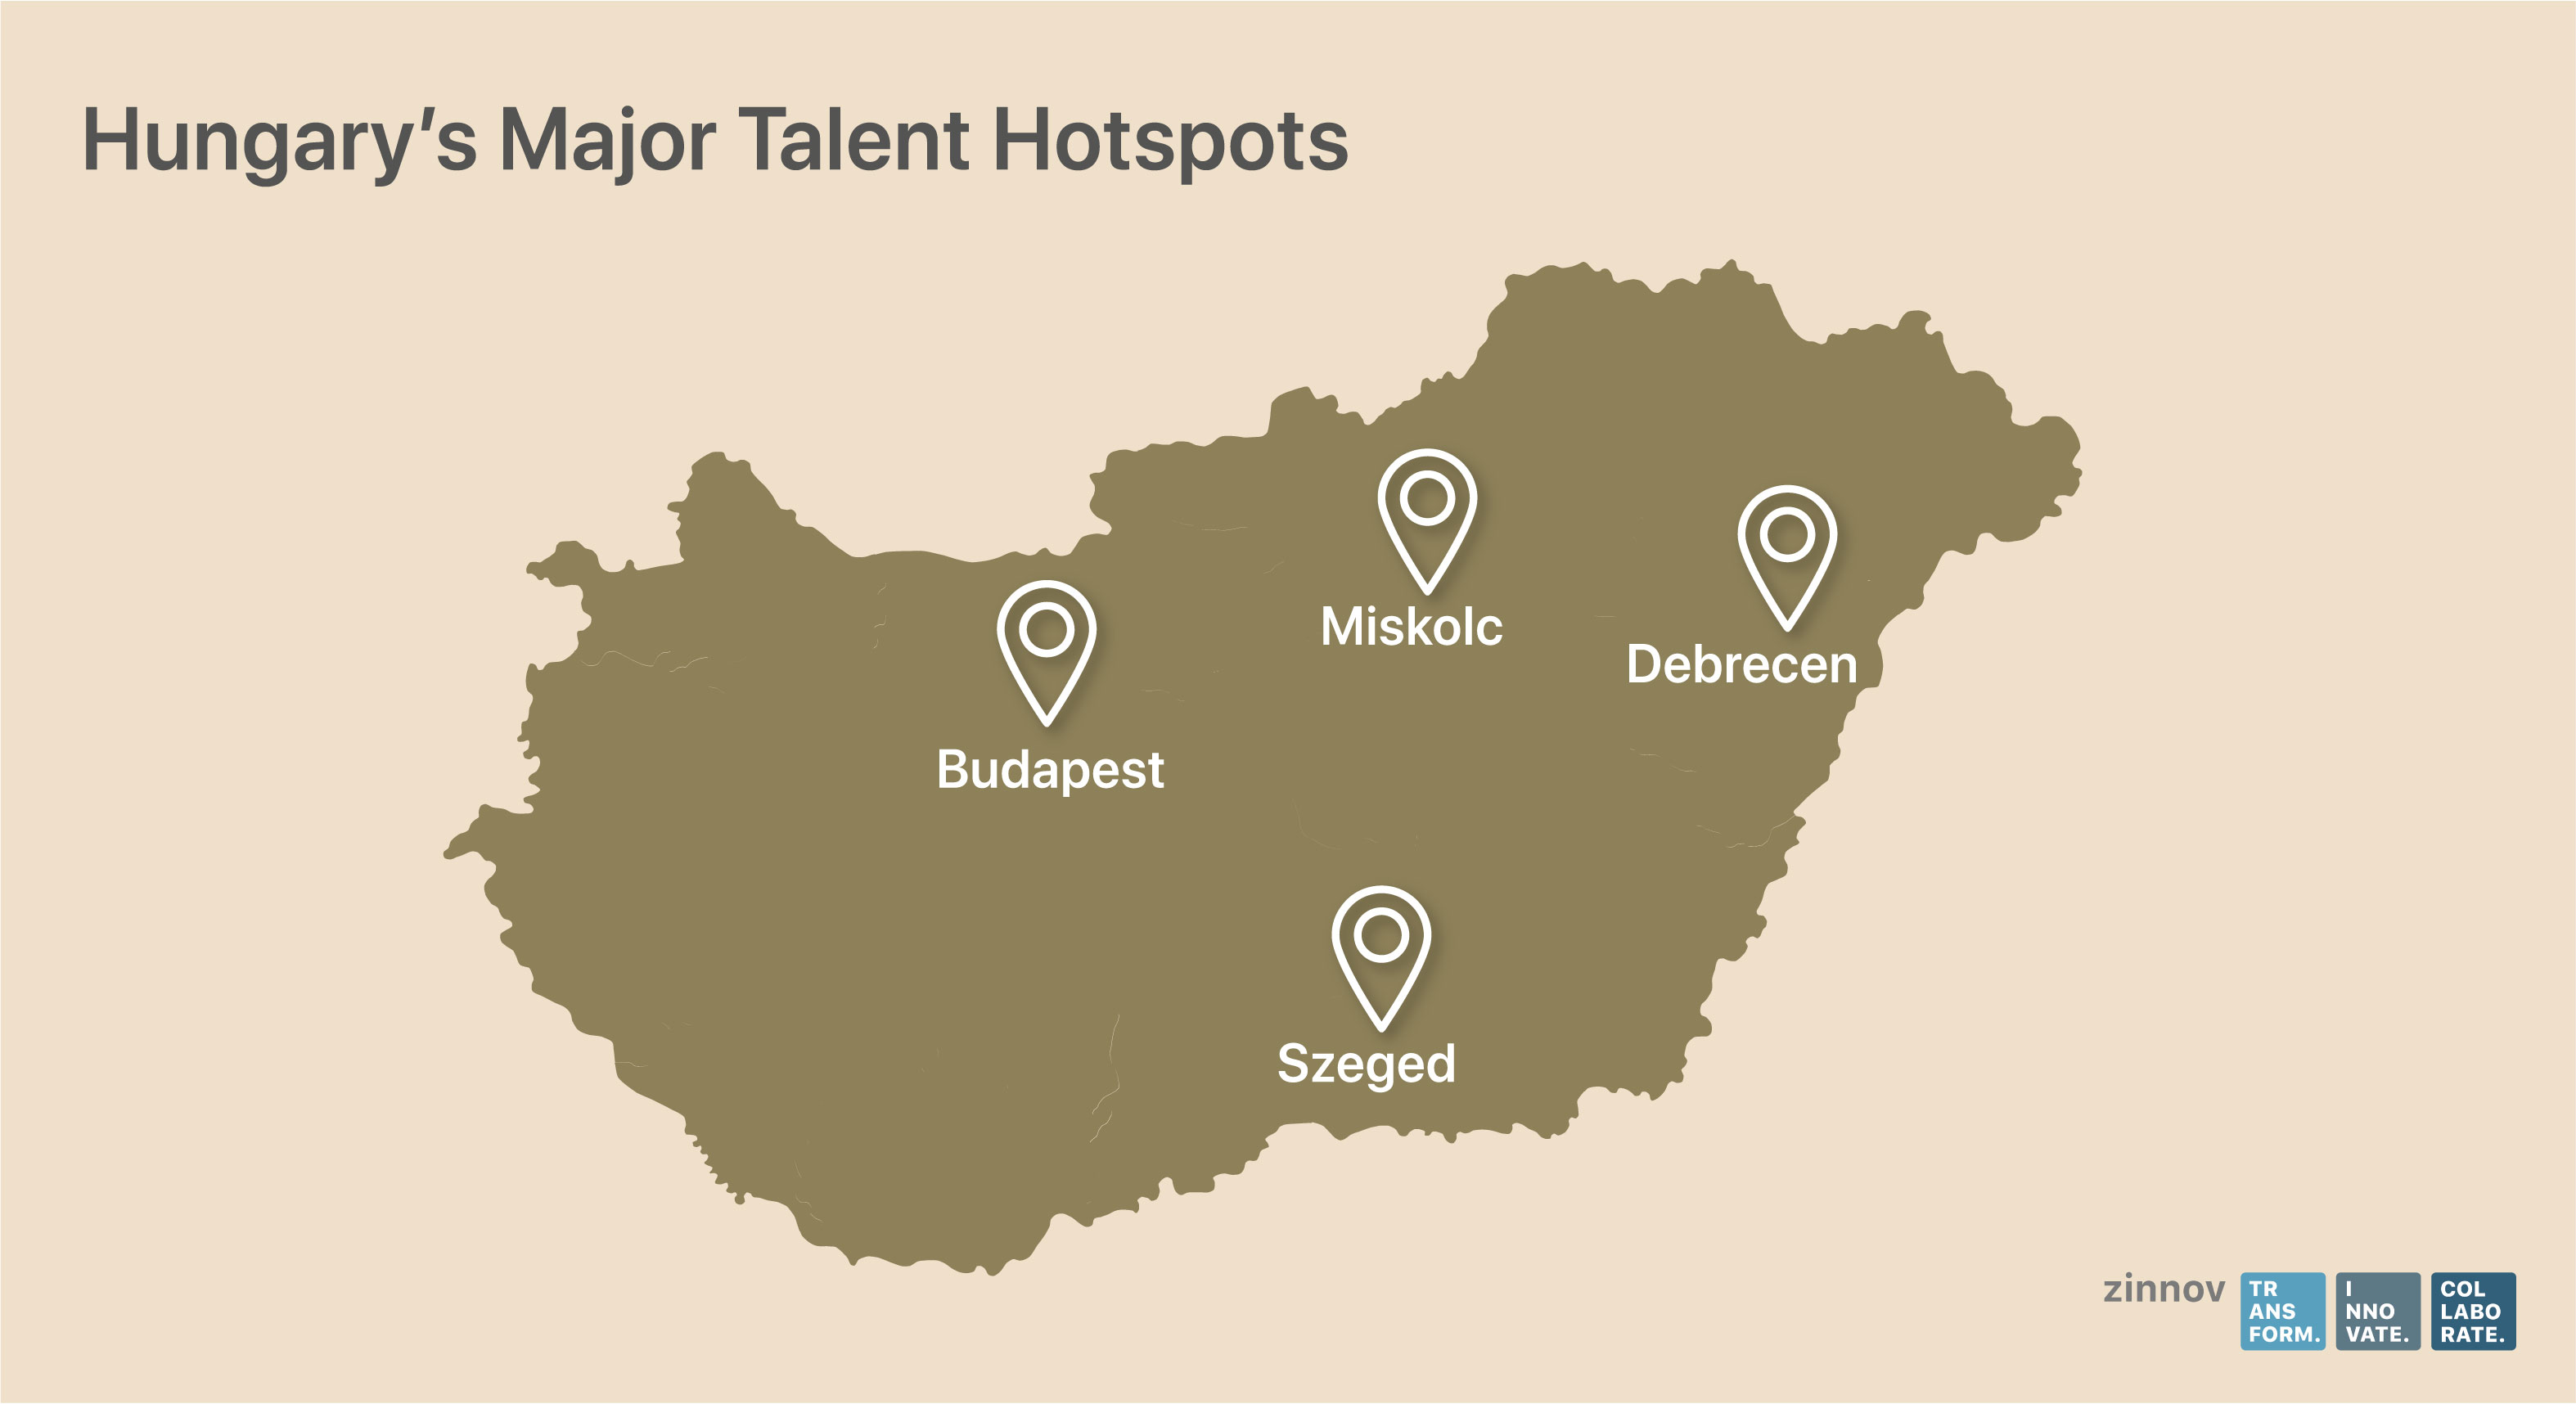 Hungary's major talent hotspots